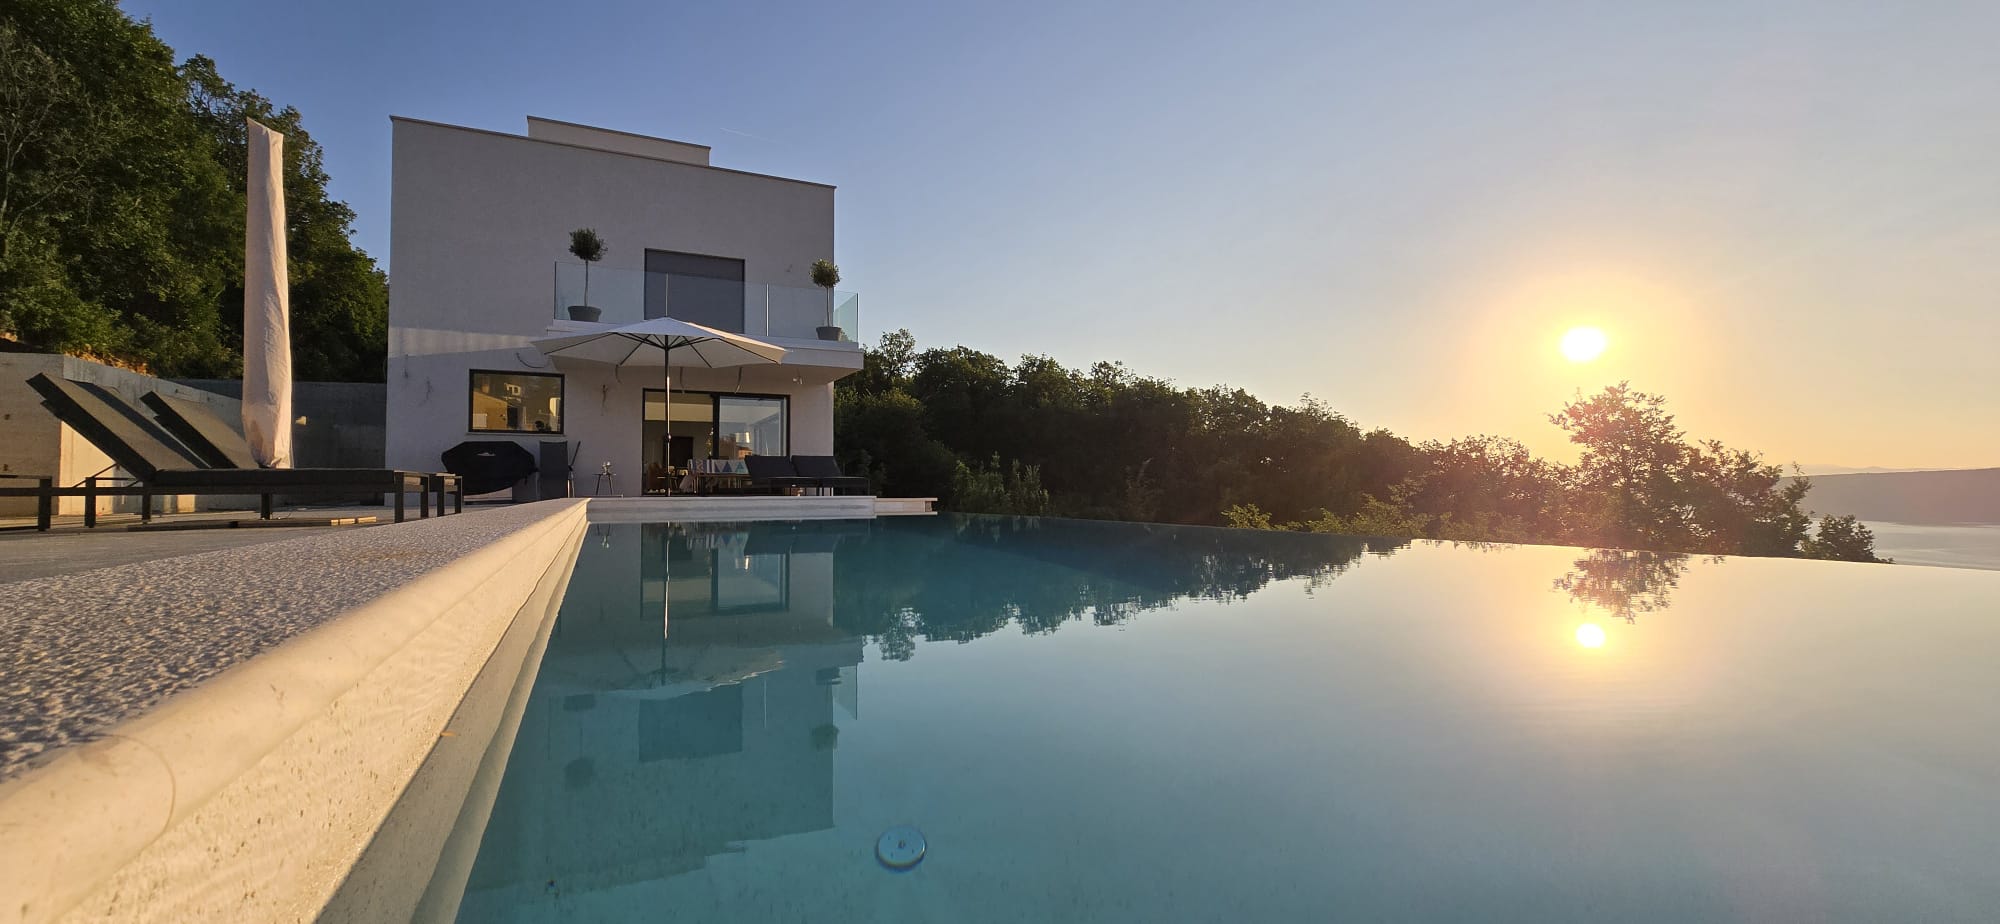 Villa Ena - Ferienhaus in Istrien mit Pool direkt am Meer und bestechendem Blick auf Meer und Natur